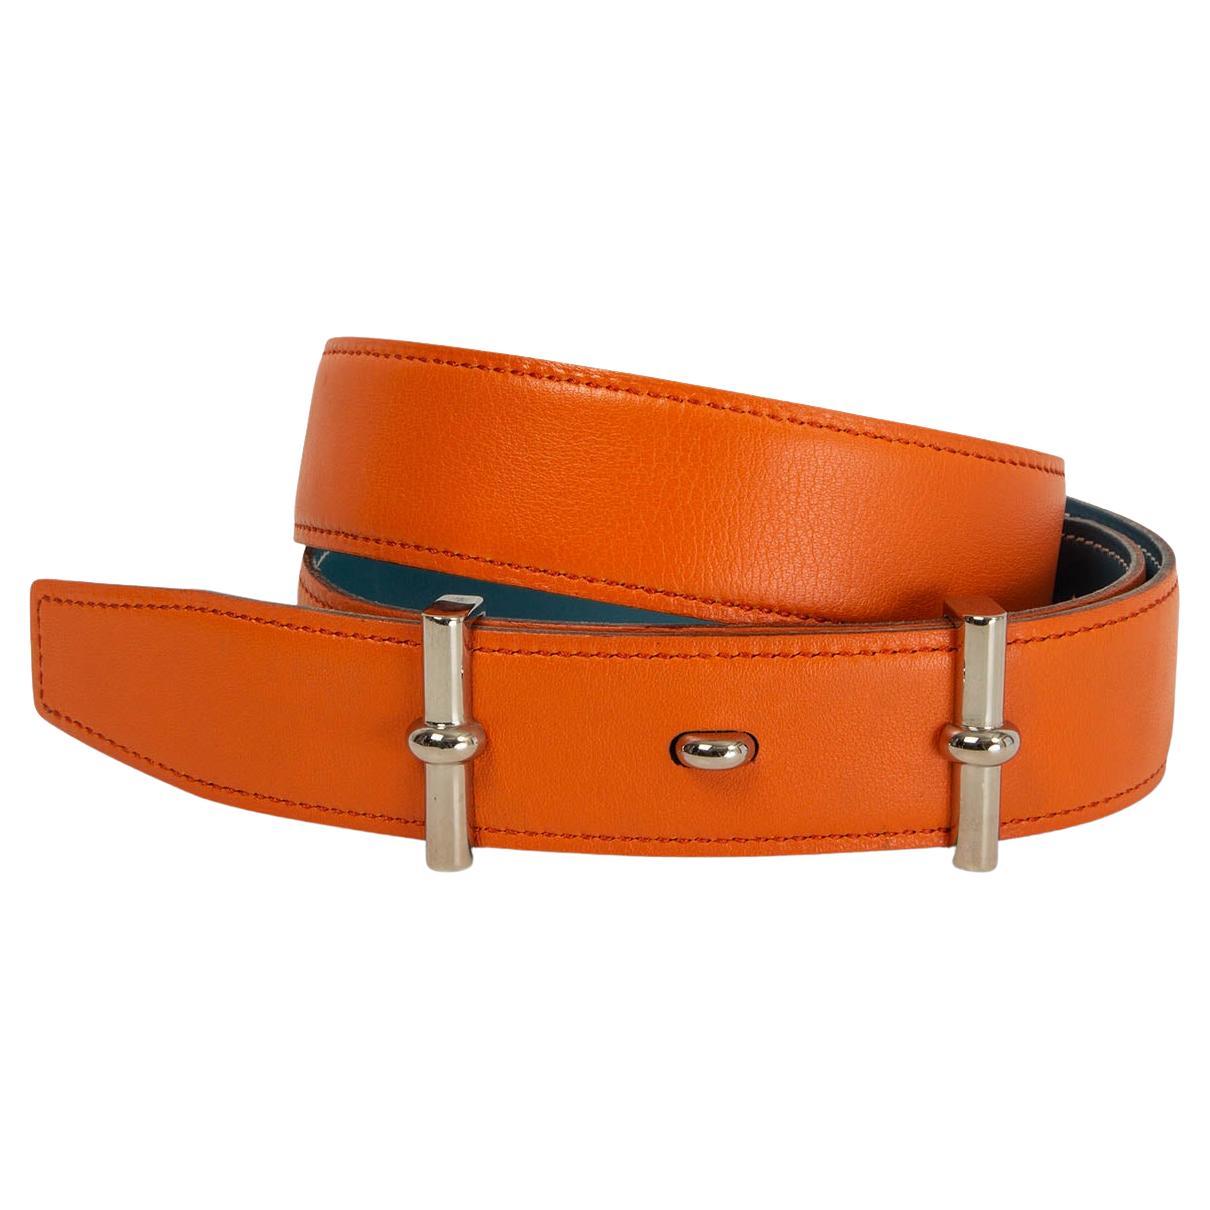 HERMES ceinture réversible 32mm en cuir jean orange et bleu 75